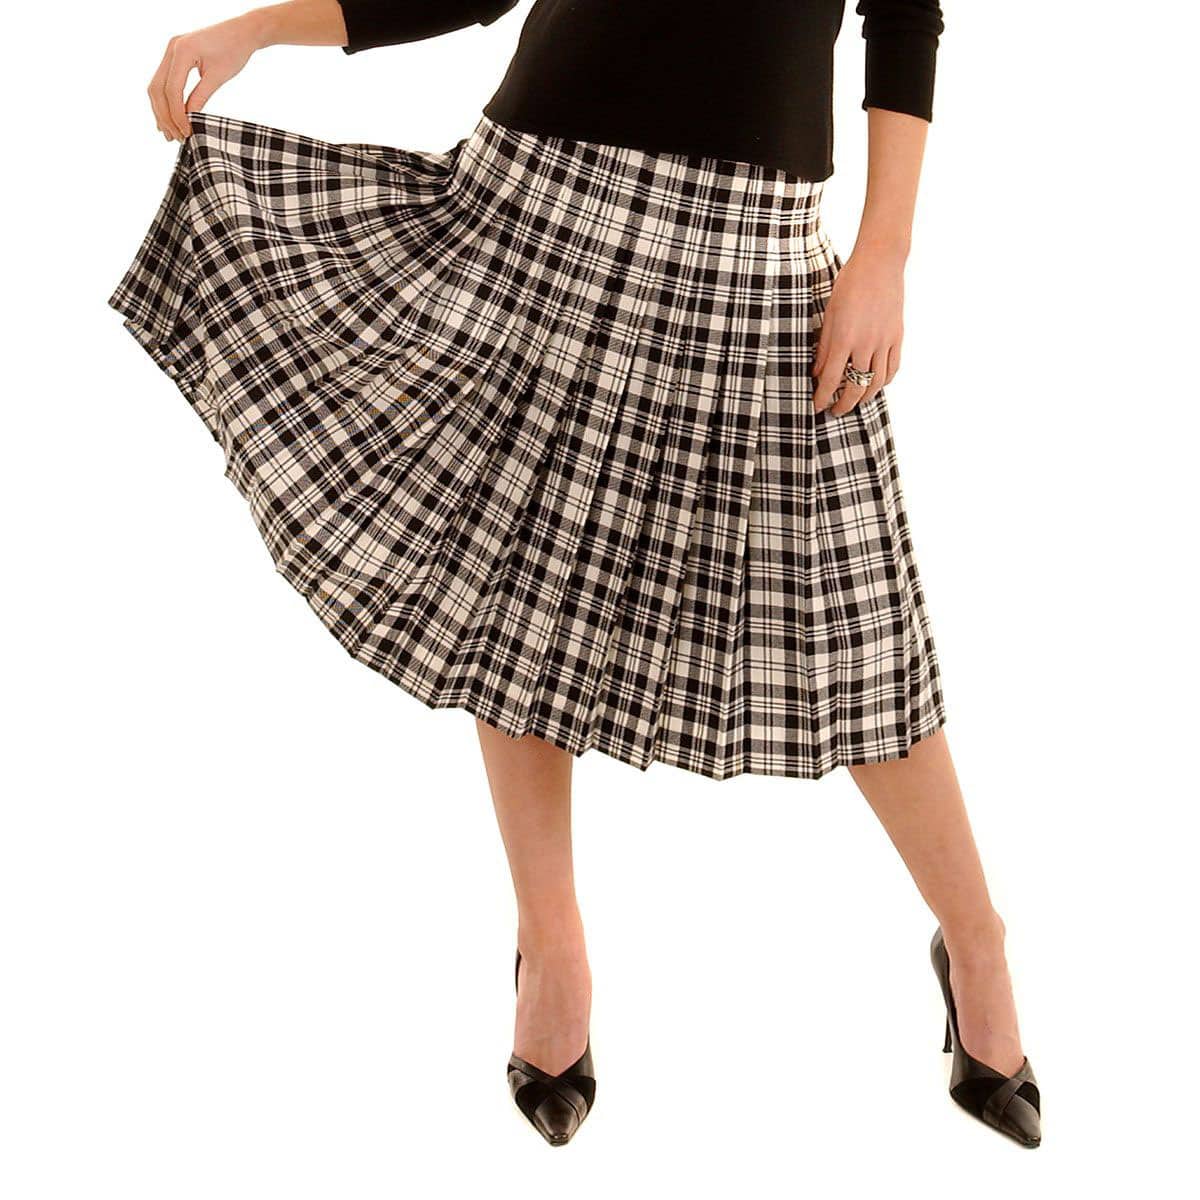 KLART Checkered Skirt | Skirt for Women | Pleated Skirt | Tennis Skirt |  Mini Skirt | Girls Skirts | Midi Skirt | Short Skirt | Skort (Red Check 